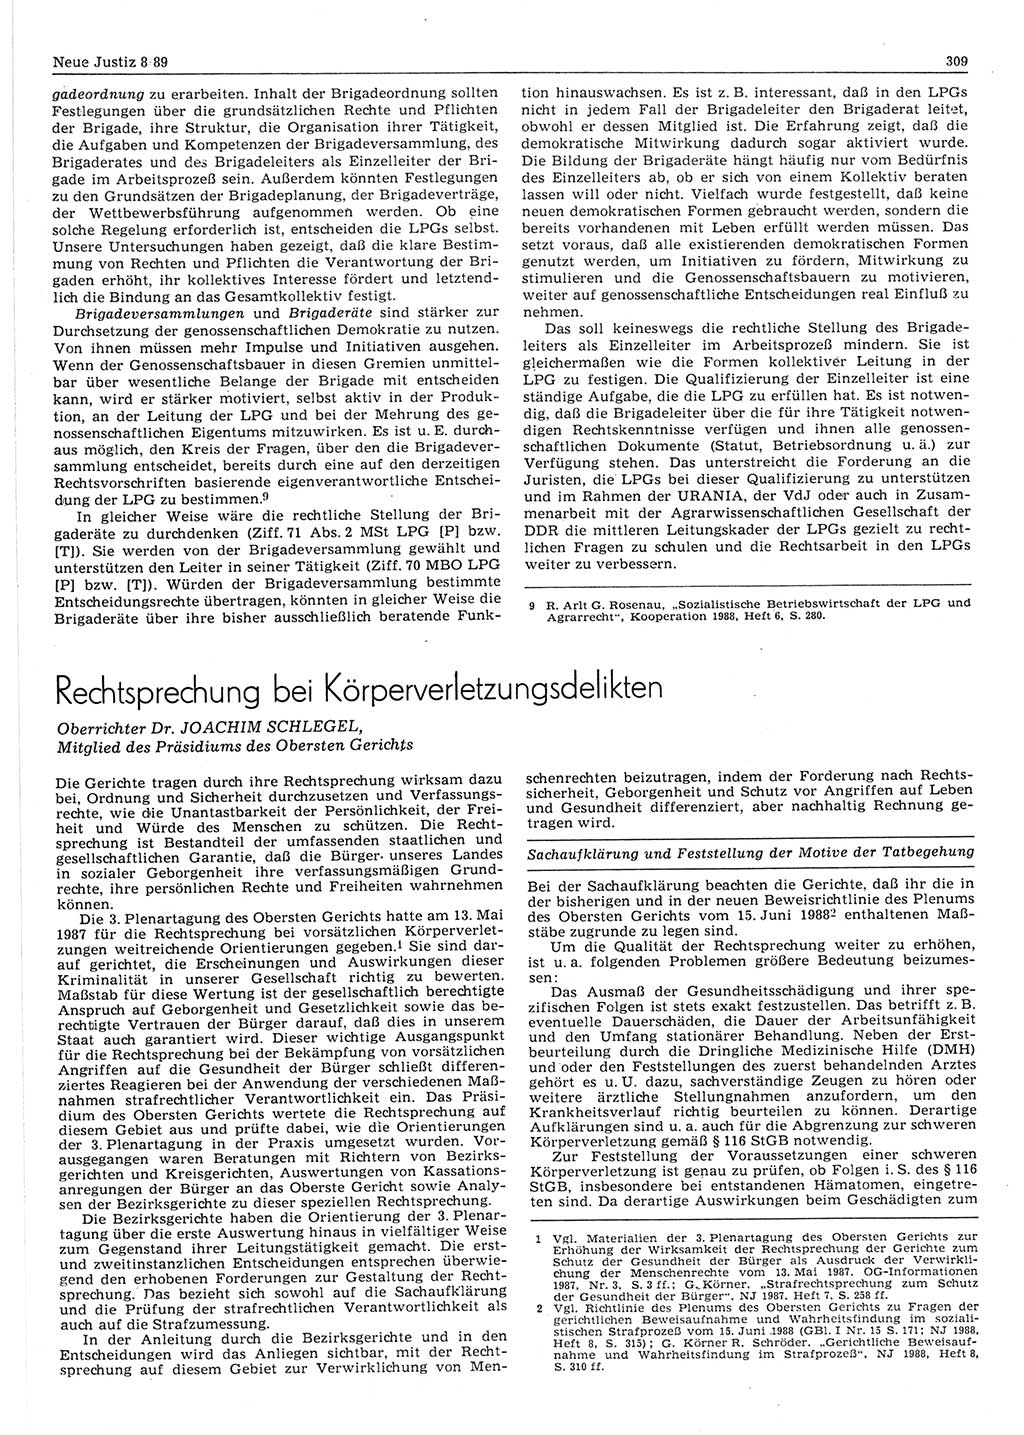 Neue Justiz (NJ), Zeitschrift für sozialistisches Recht und Gesetzlichkeit [Deutsche Demokratische Republik (DDR)], 43. Jahrgang 1989, Seite 309 (NJ DDR 1989, S. 309)